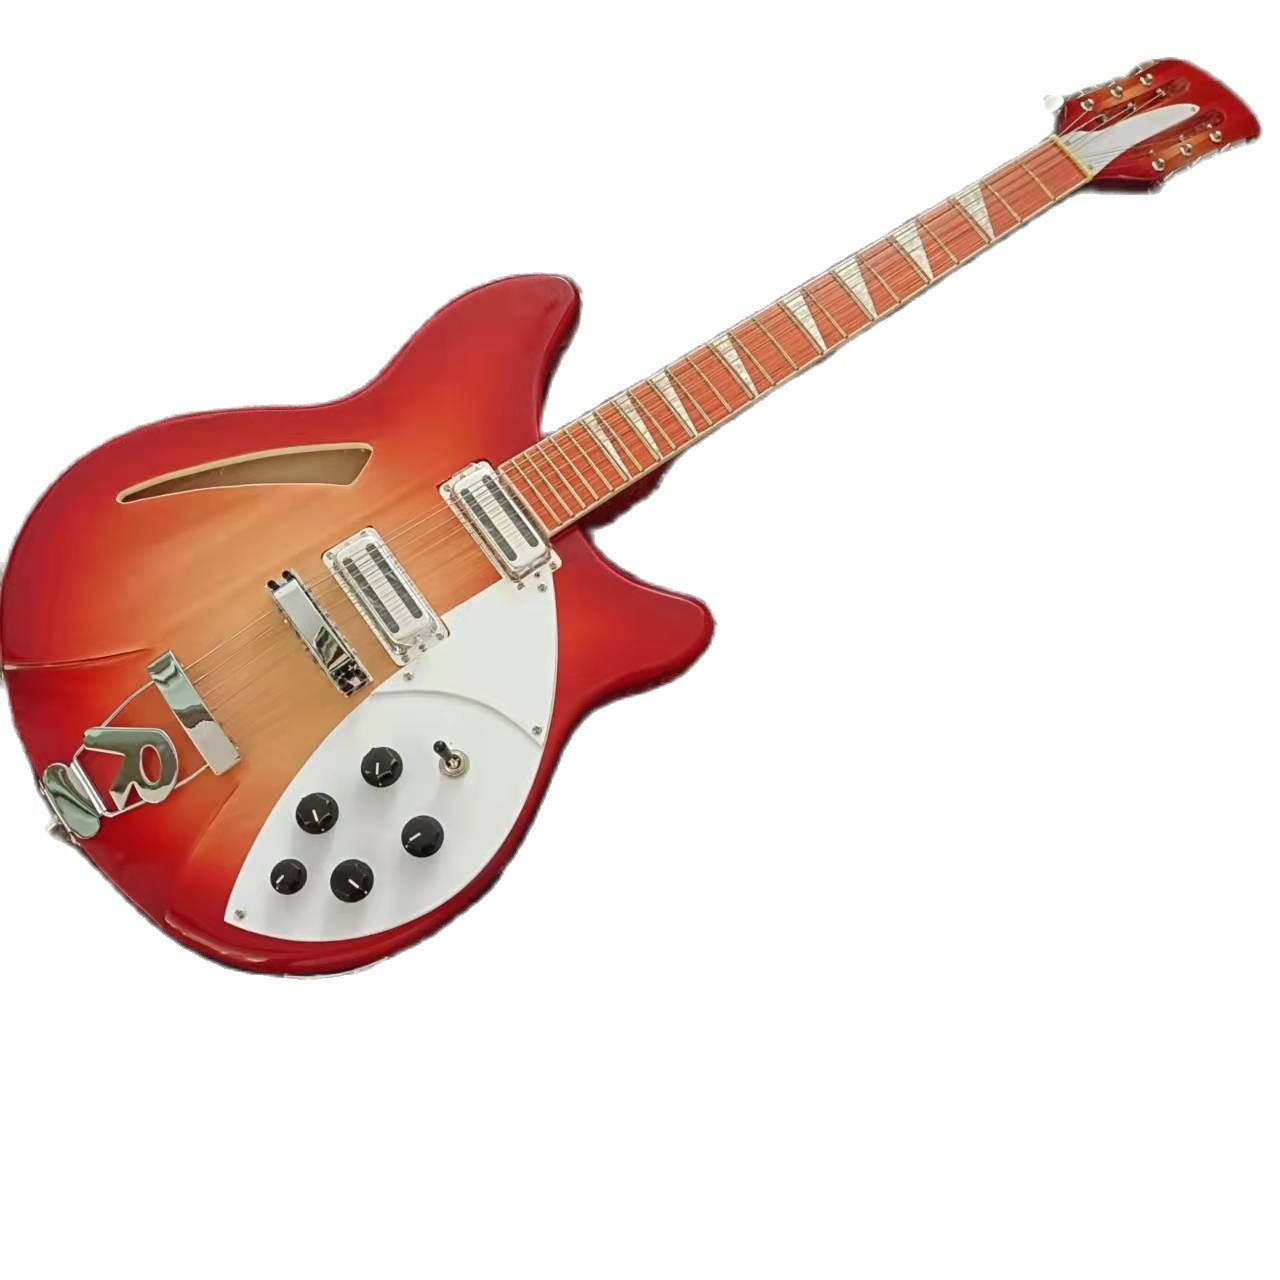 Guitarra modelo 360.